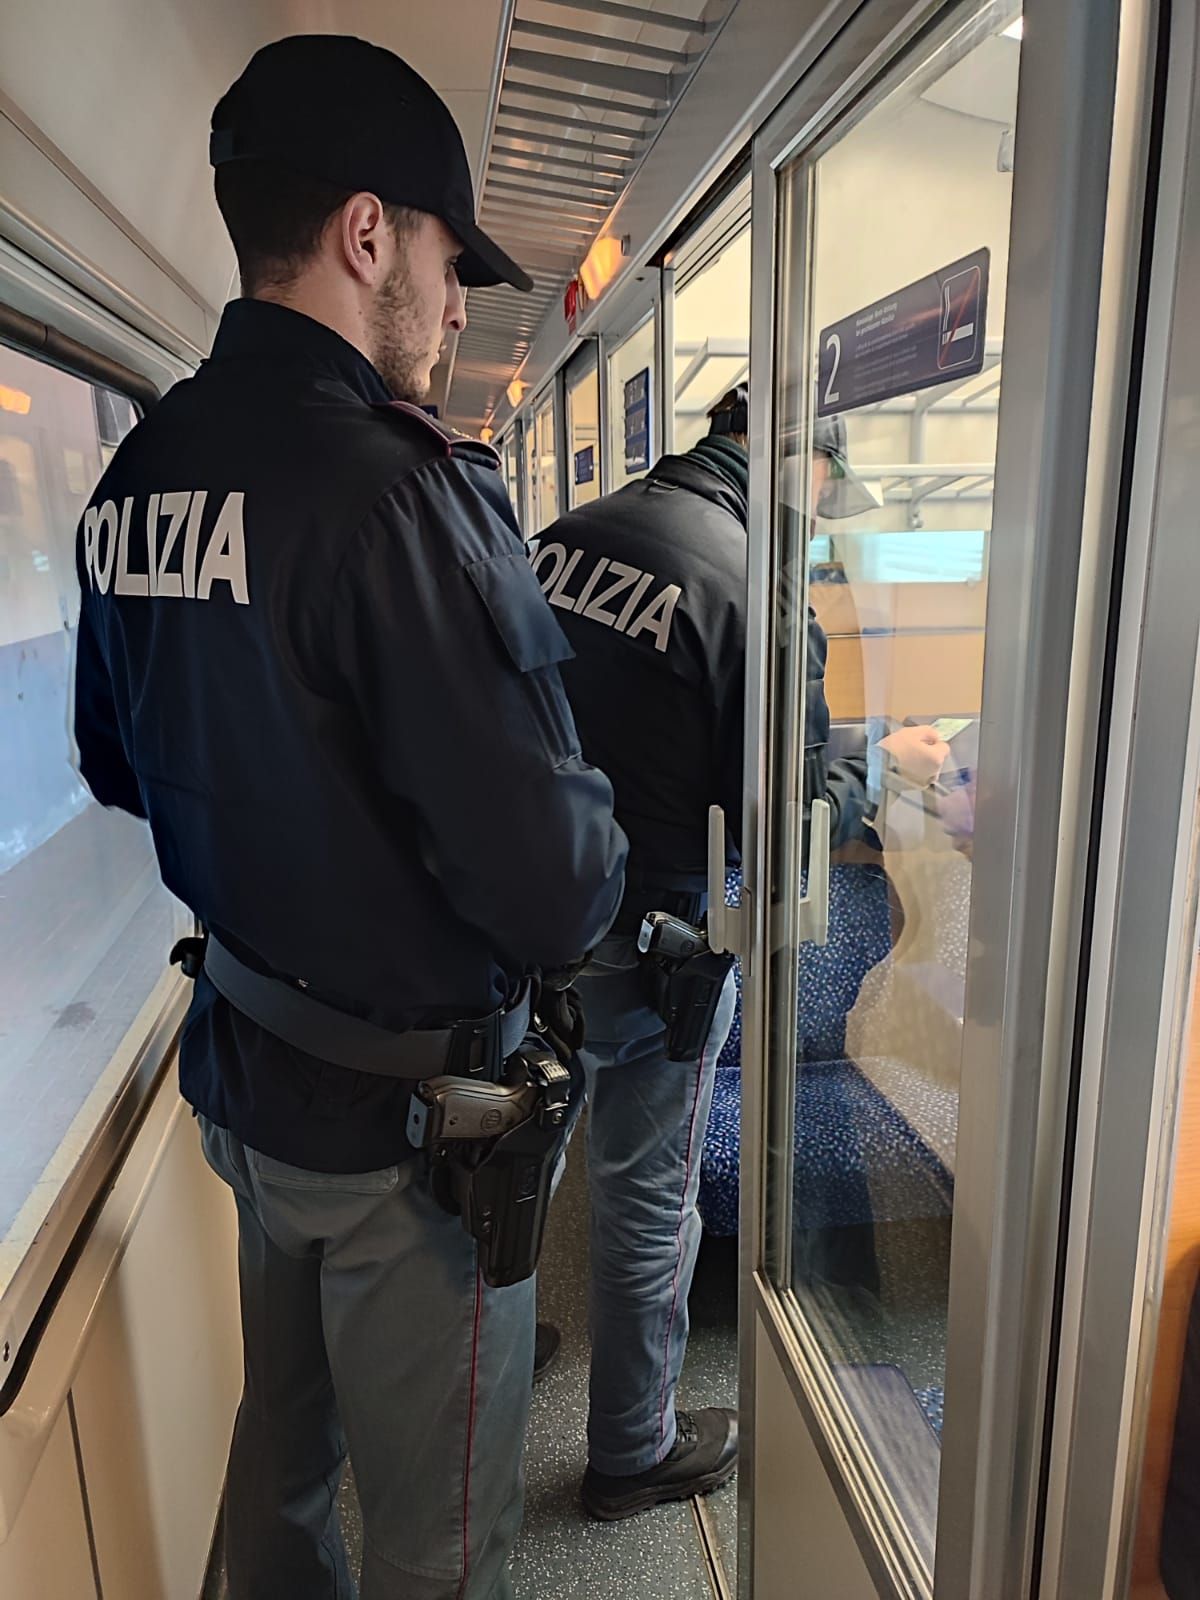 Arrestato per il furto di uno zaino in piazzale stazione a Verona Porta Nuova,  reagisce nei confronti degli agenti intervenuti